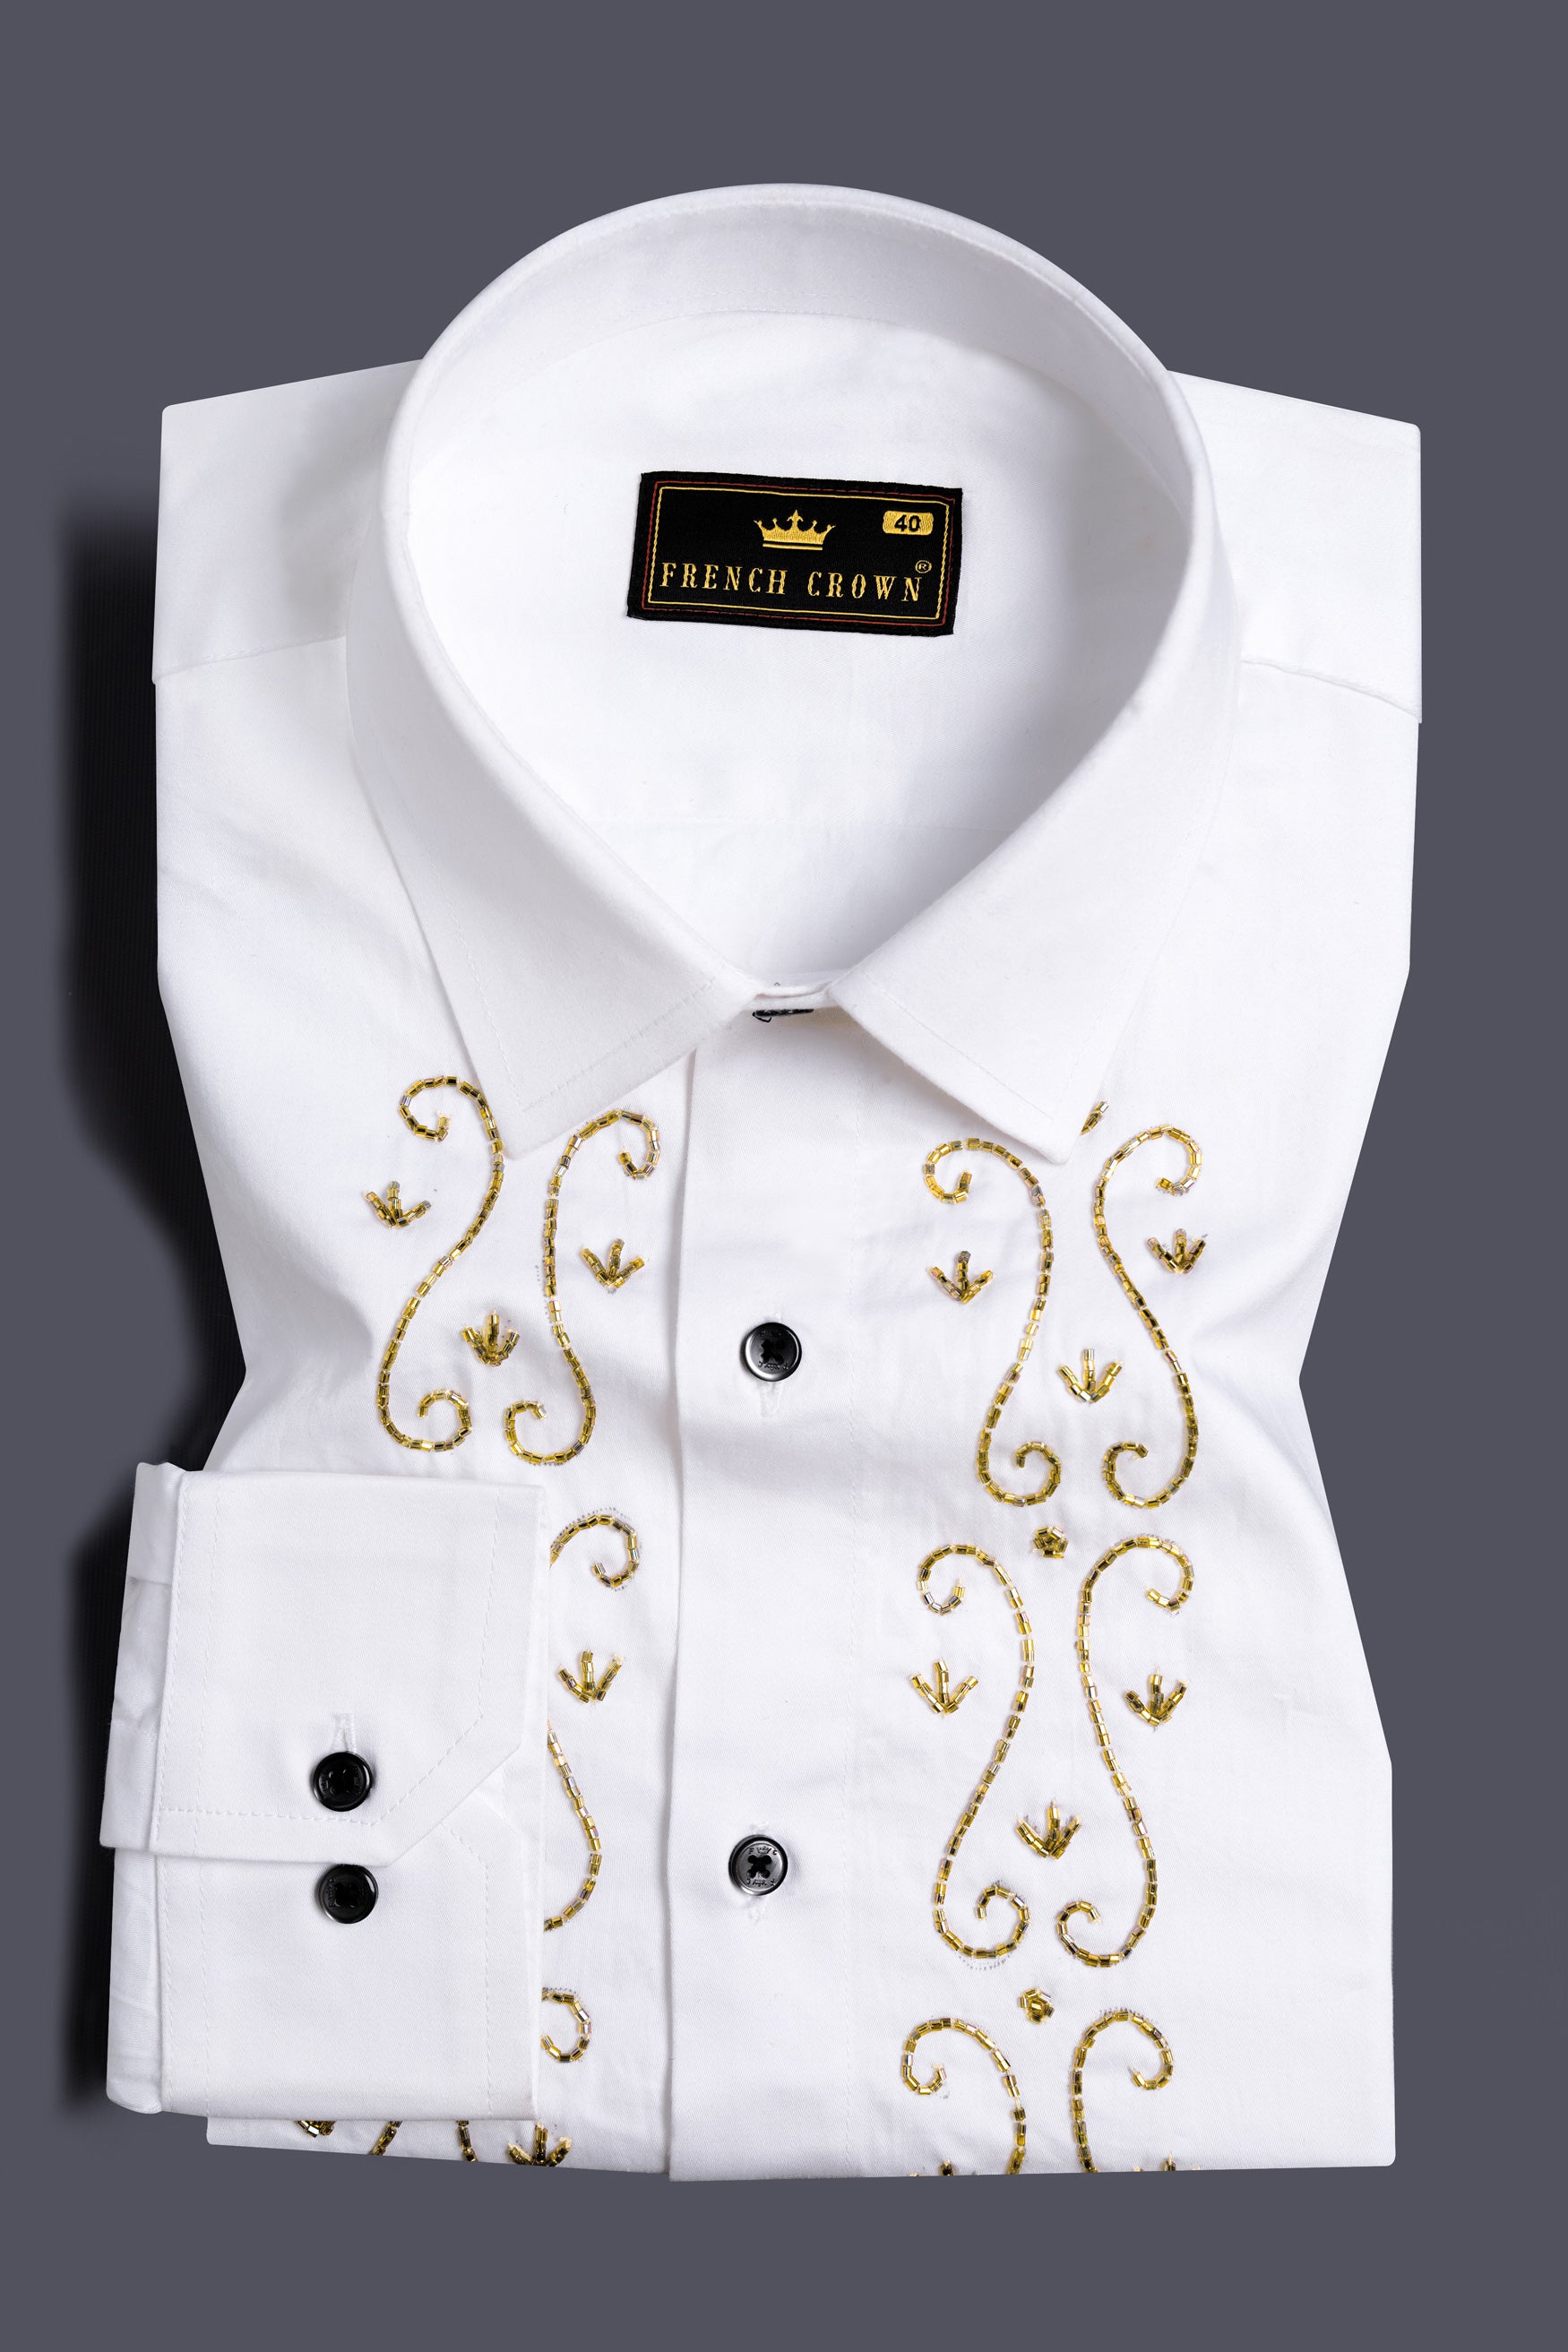 Bright White Curvy Lines Beads Handwork Subtle Sheen Super Soft Premium Cotton Designer Shirt  11954-BLK-NP-E448-38, 11954-BLK-NP-E448-H-38, 11954-BLK-NP-E448-39, 11954-BLK-NP-E448-H-39, 11954-BLK-NP-E448-40, 11954-BLK-NP-E448-H-40, 11954-BLK-NP-E448-42, 11954-BLK-NP-E448-H-42, 11954-BLK-NP-E448-44, 11954-BLK-NP-E448-H-44, 11954-BLK-NP-E448-46, 11954-BLK-NP-E448-H-46, 11954-BLK-NP-E448-48, 11954-BLK-NP-E448-H-48, 11954-BLK-NP-E448-50, 11954-BLK-NP-E448-H-50, 11954-BLK-NP-E448-52, 11954-BLK-NP-E448-H-52